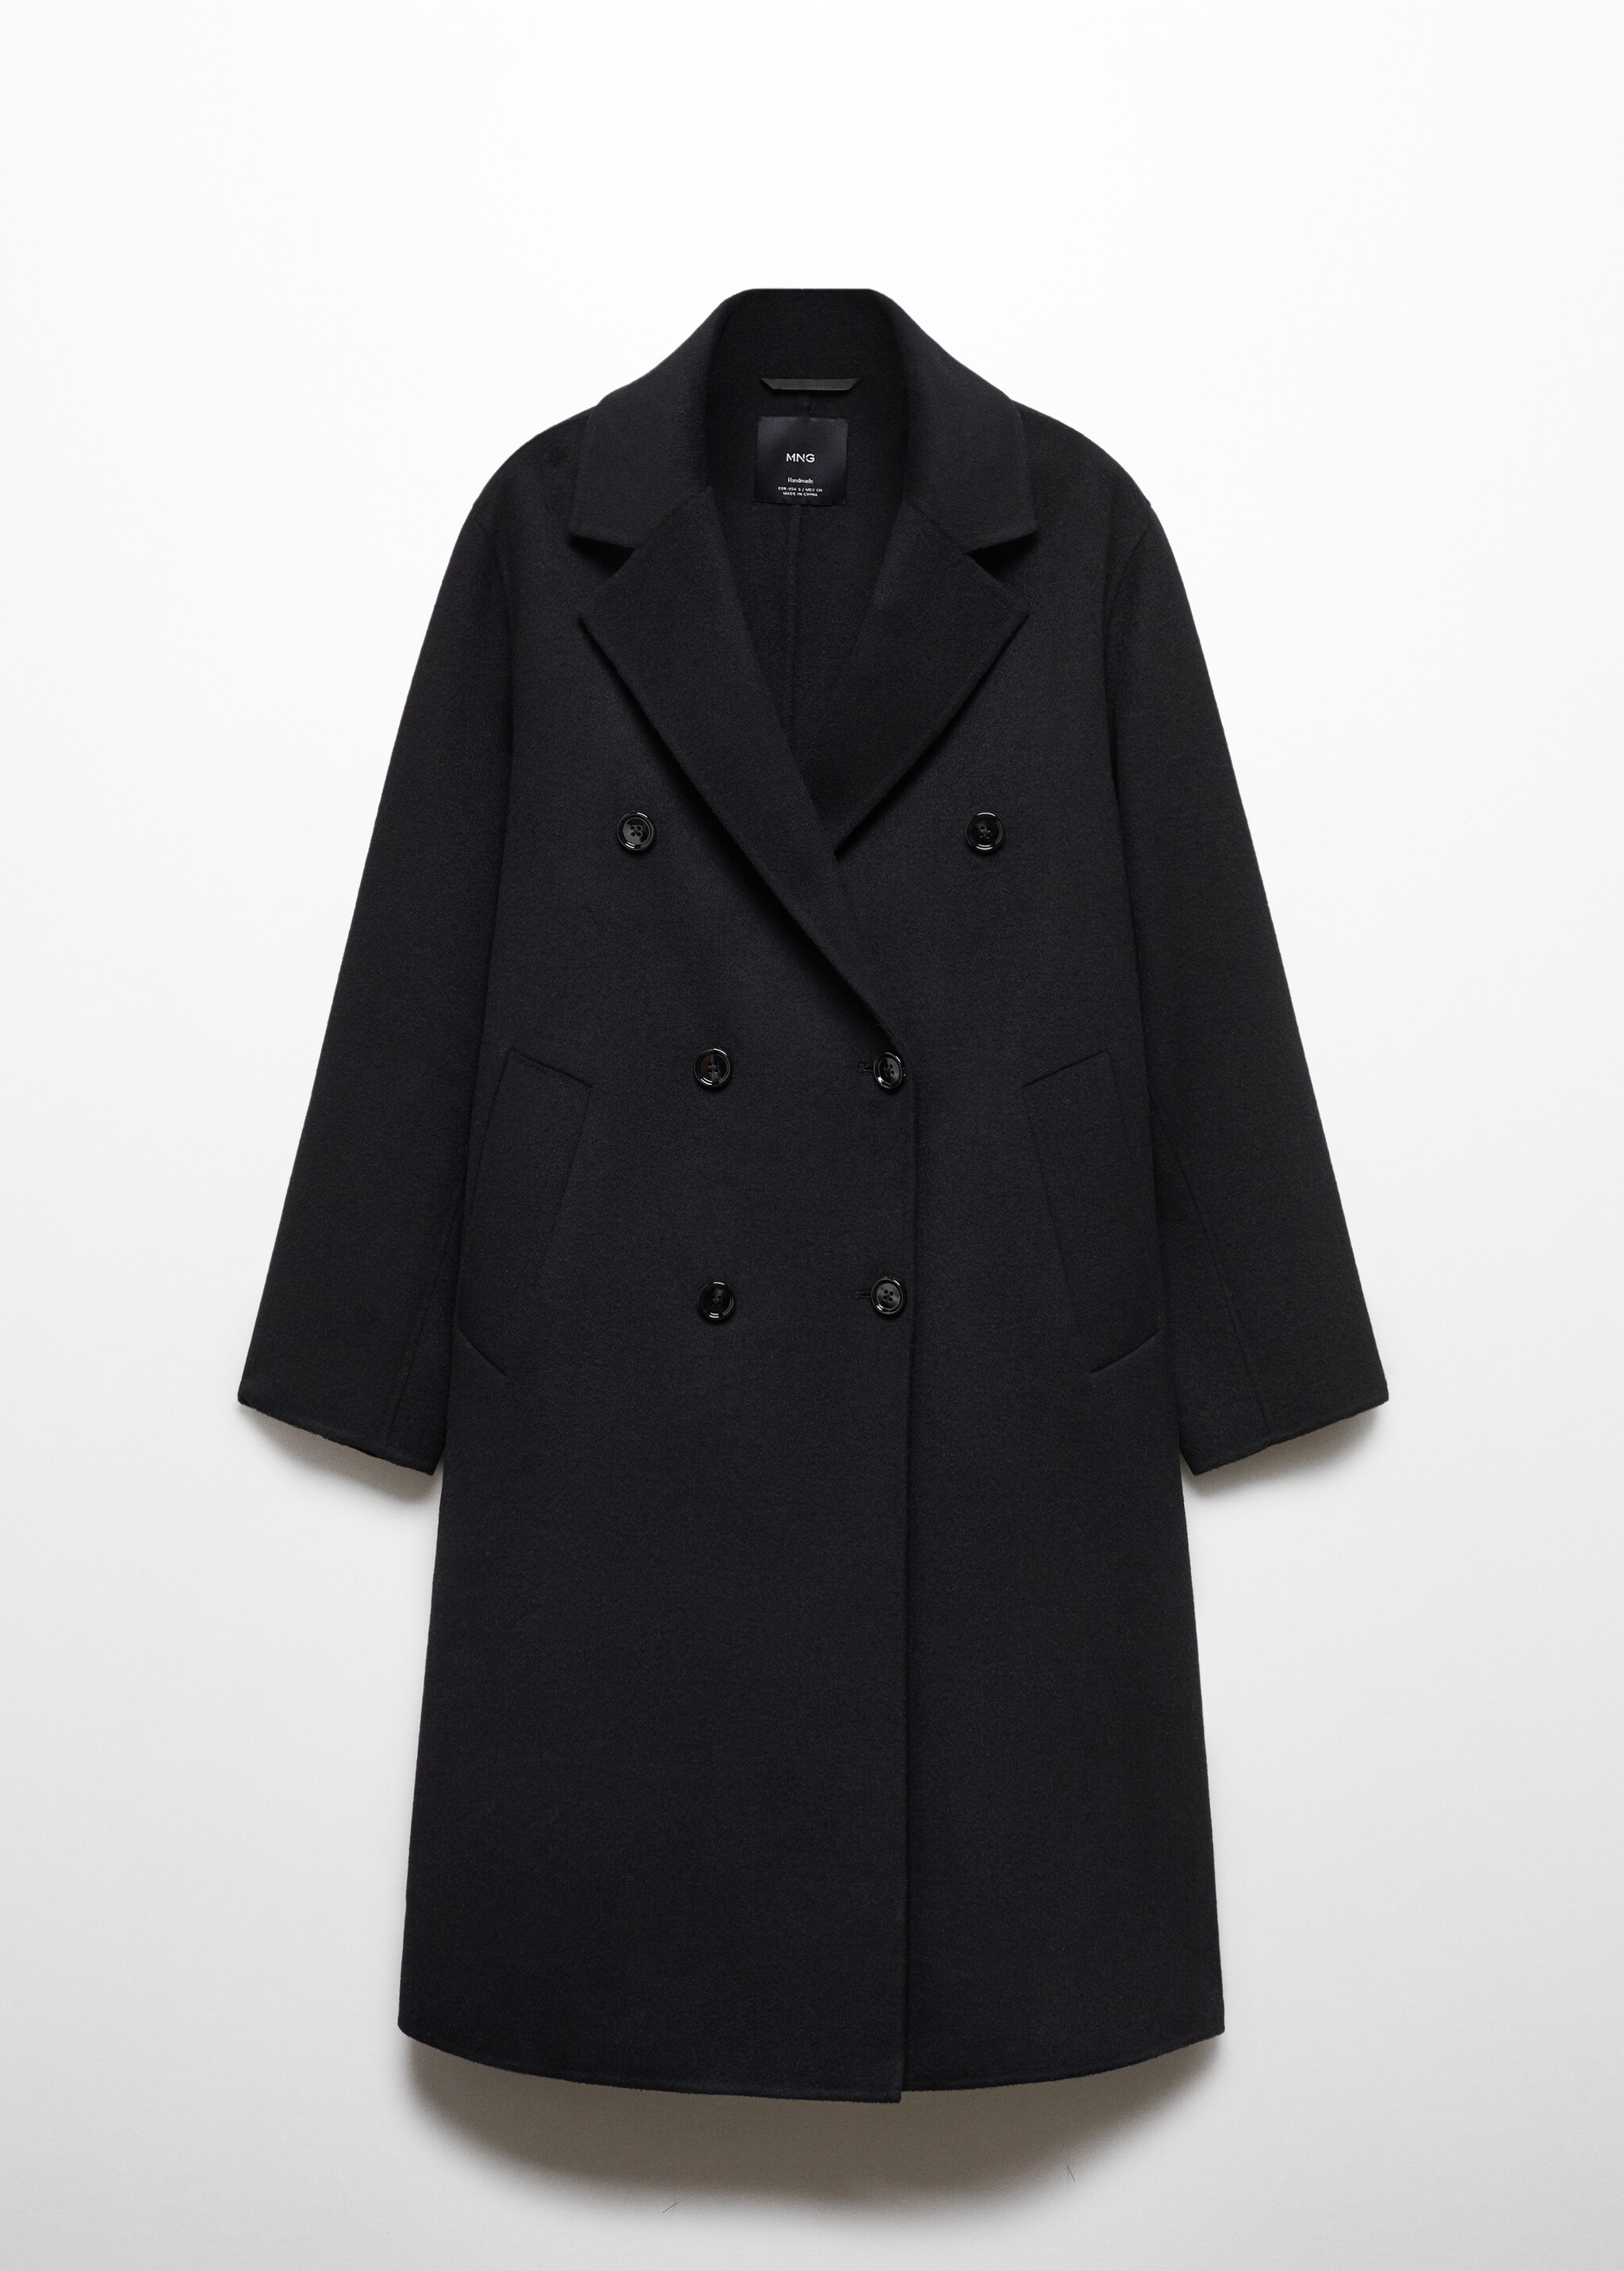 Παλτό μαλλί handmade oversize - Προϊόν χωρίς μοντέλο